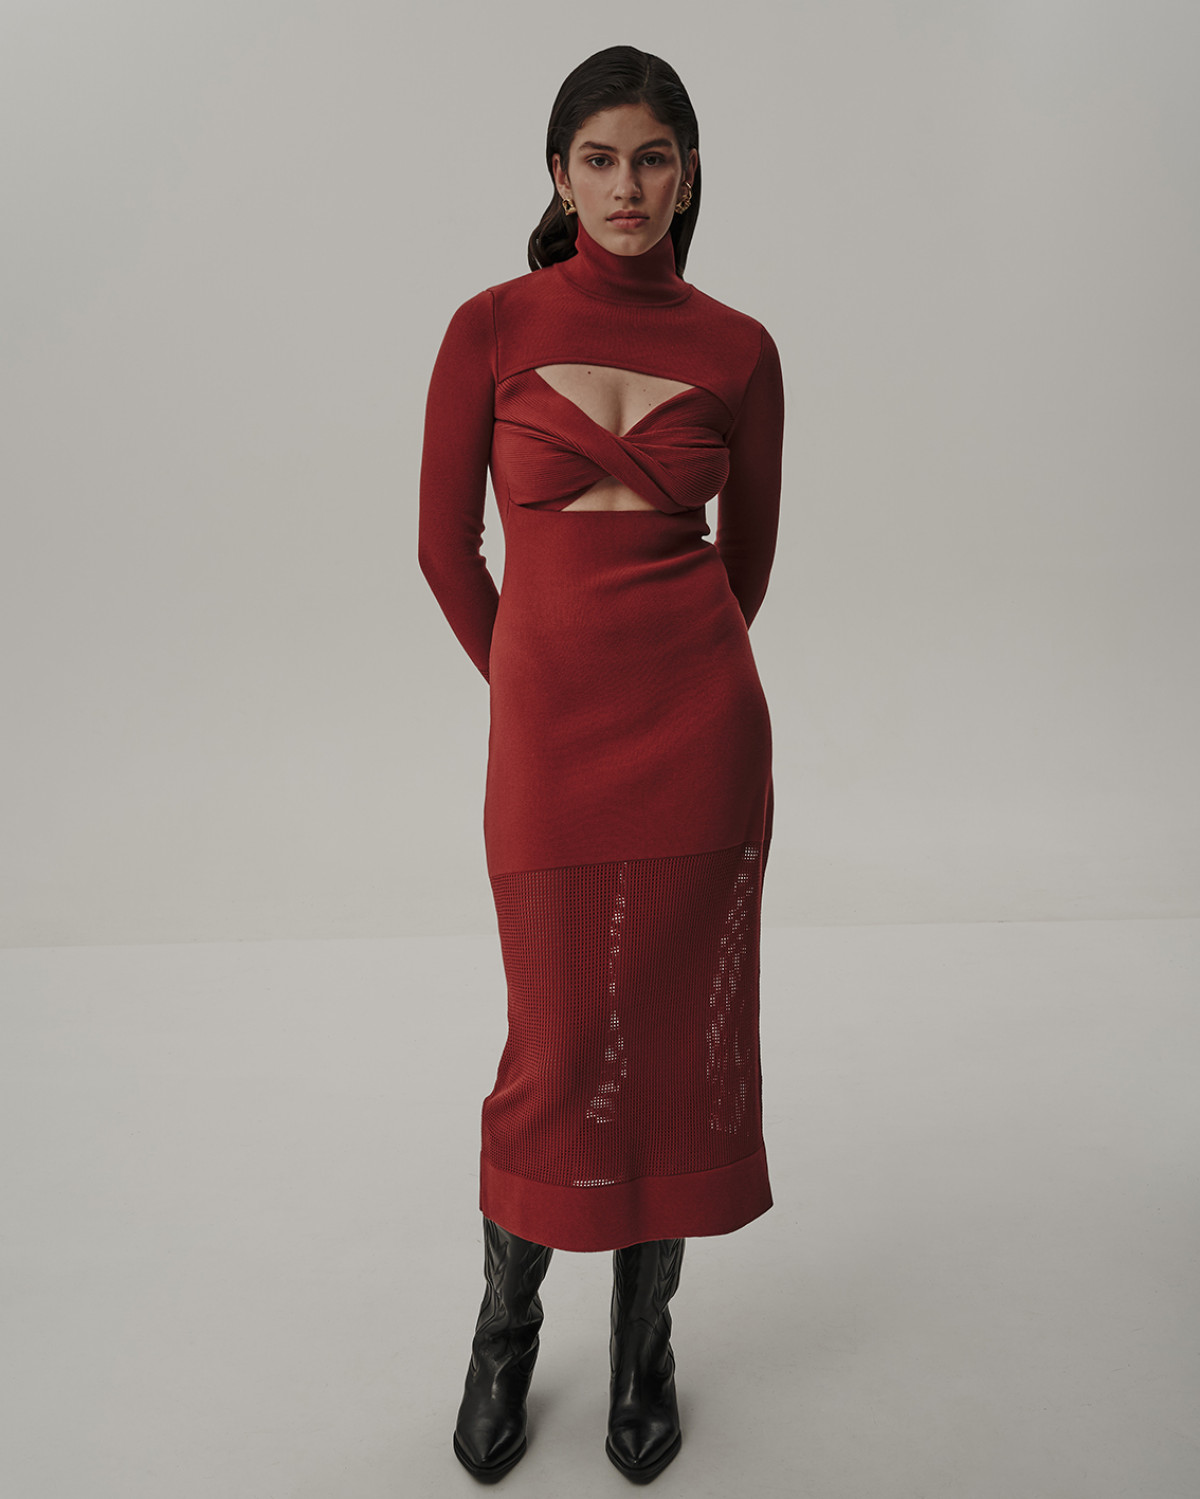 красное платье